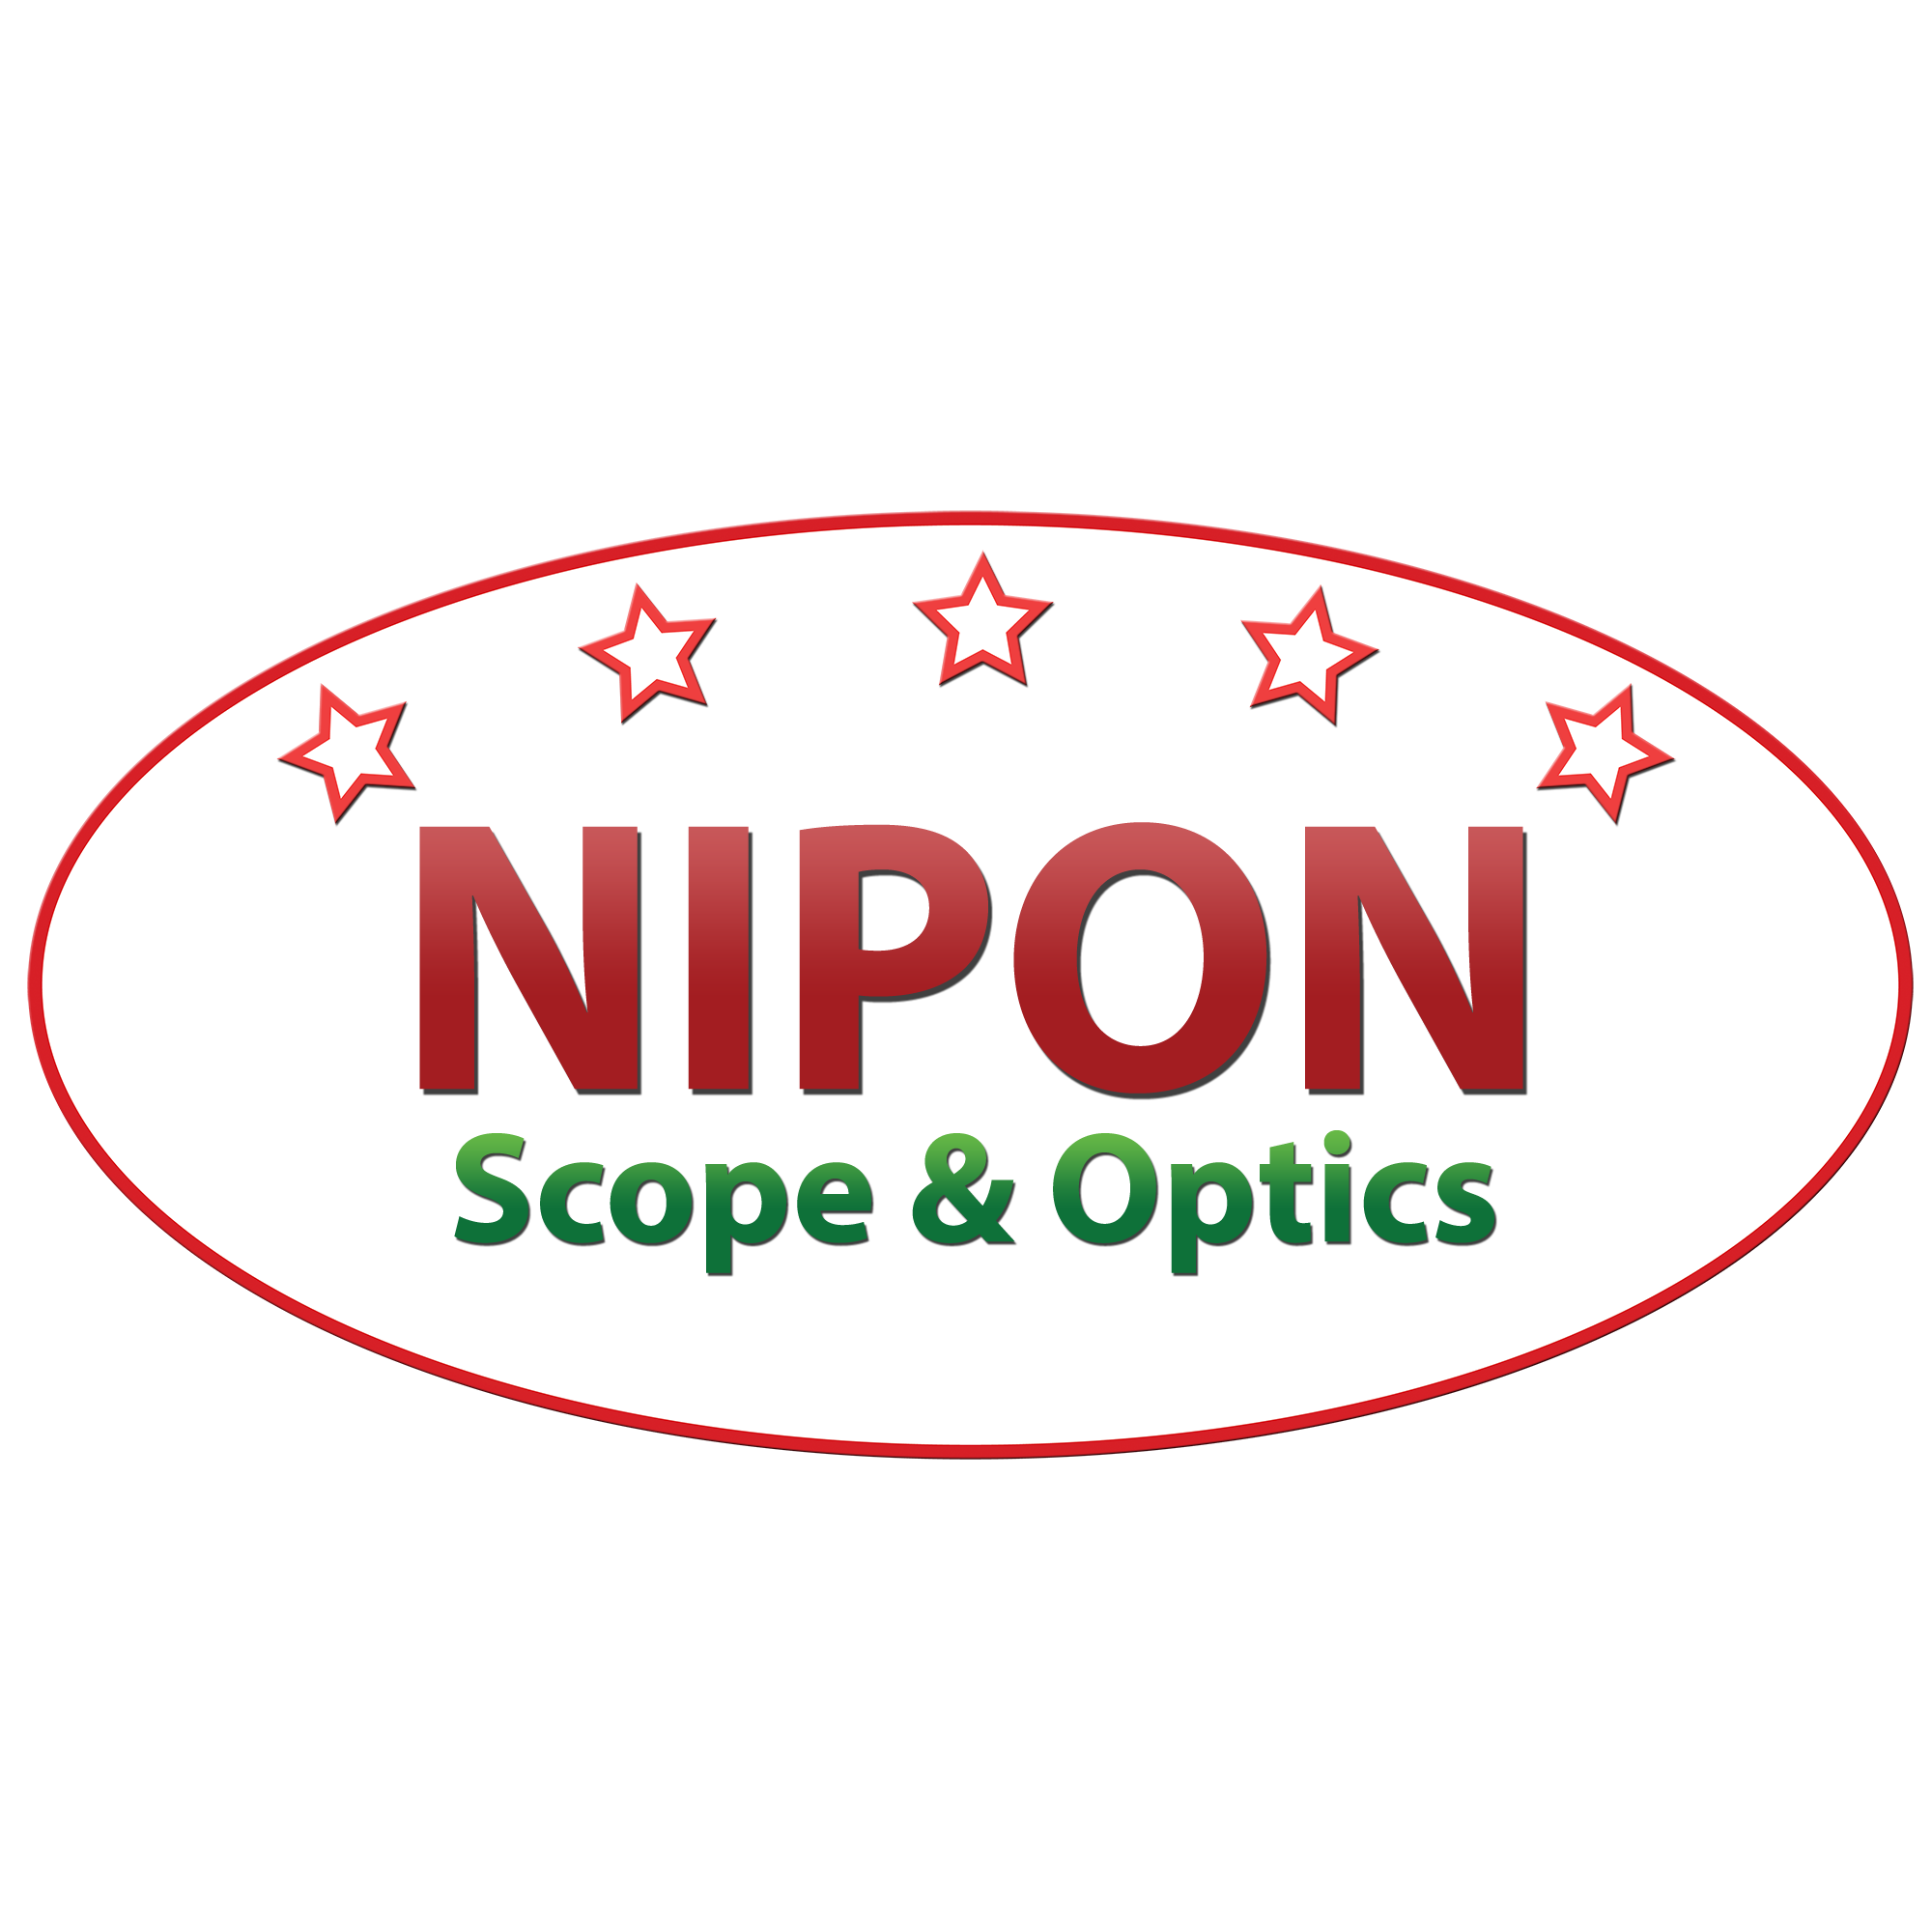 NIPON SCOPE & OPTICS